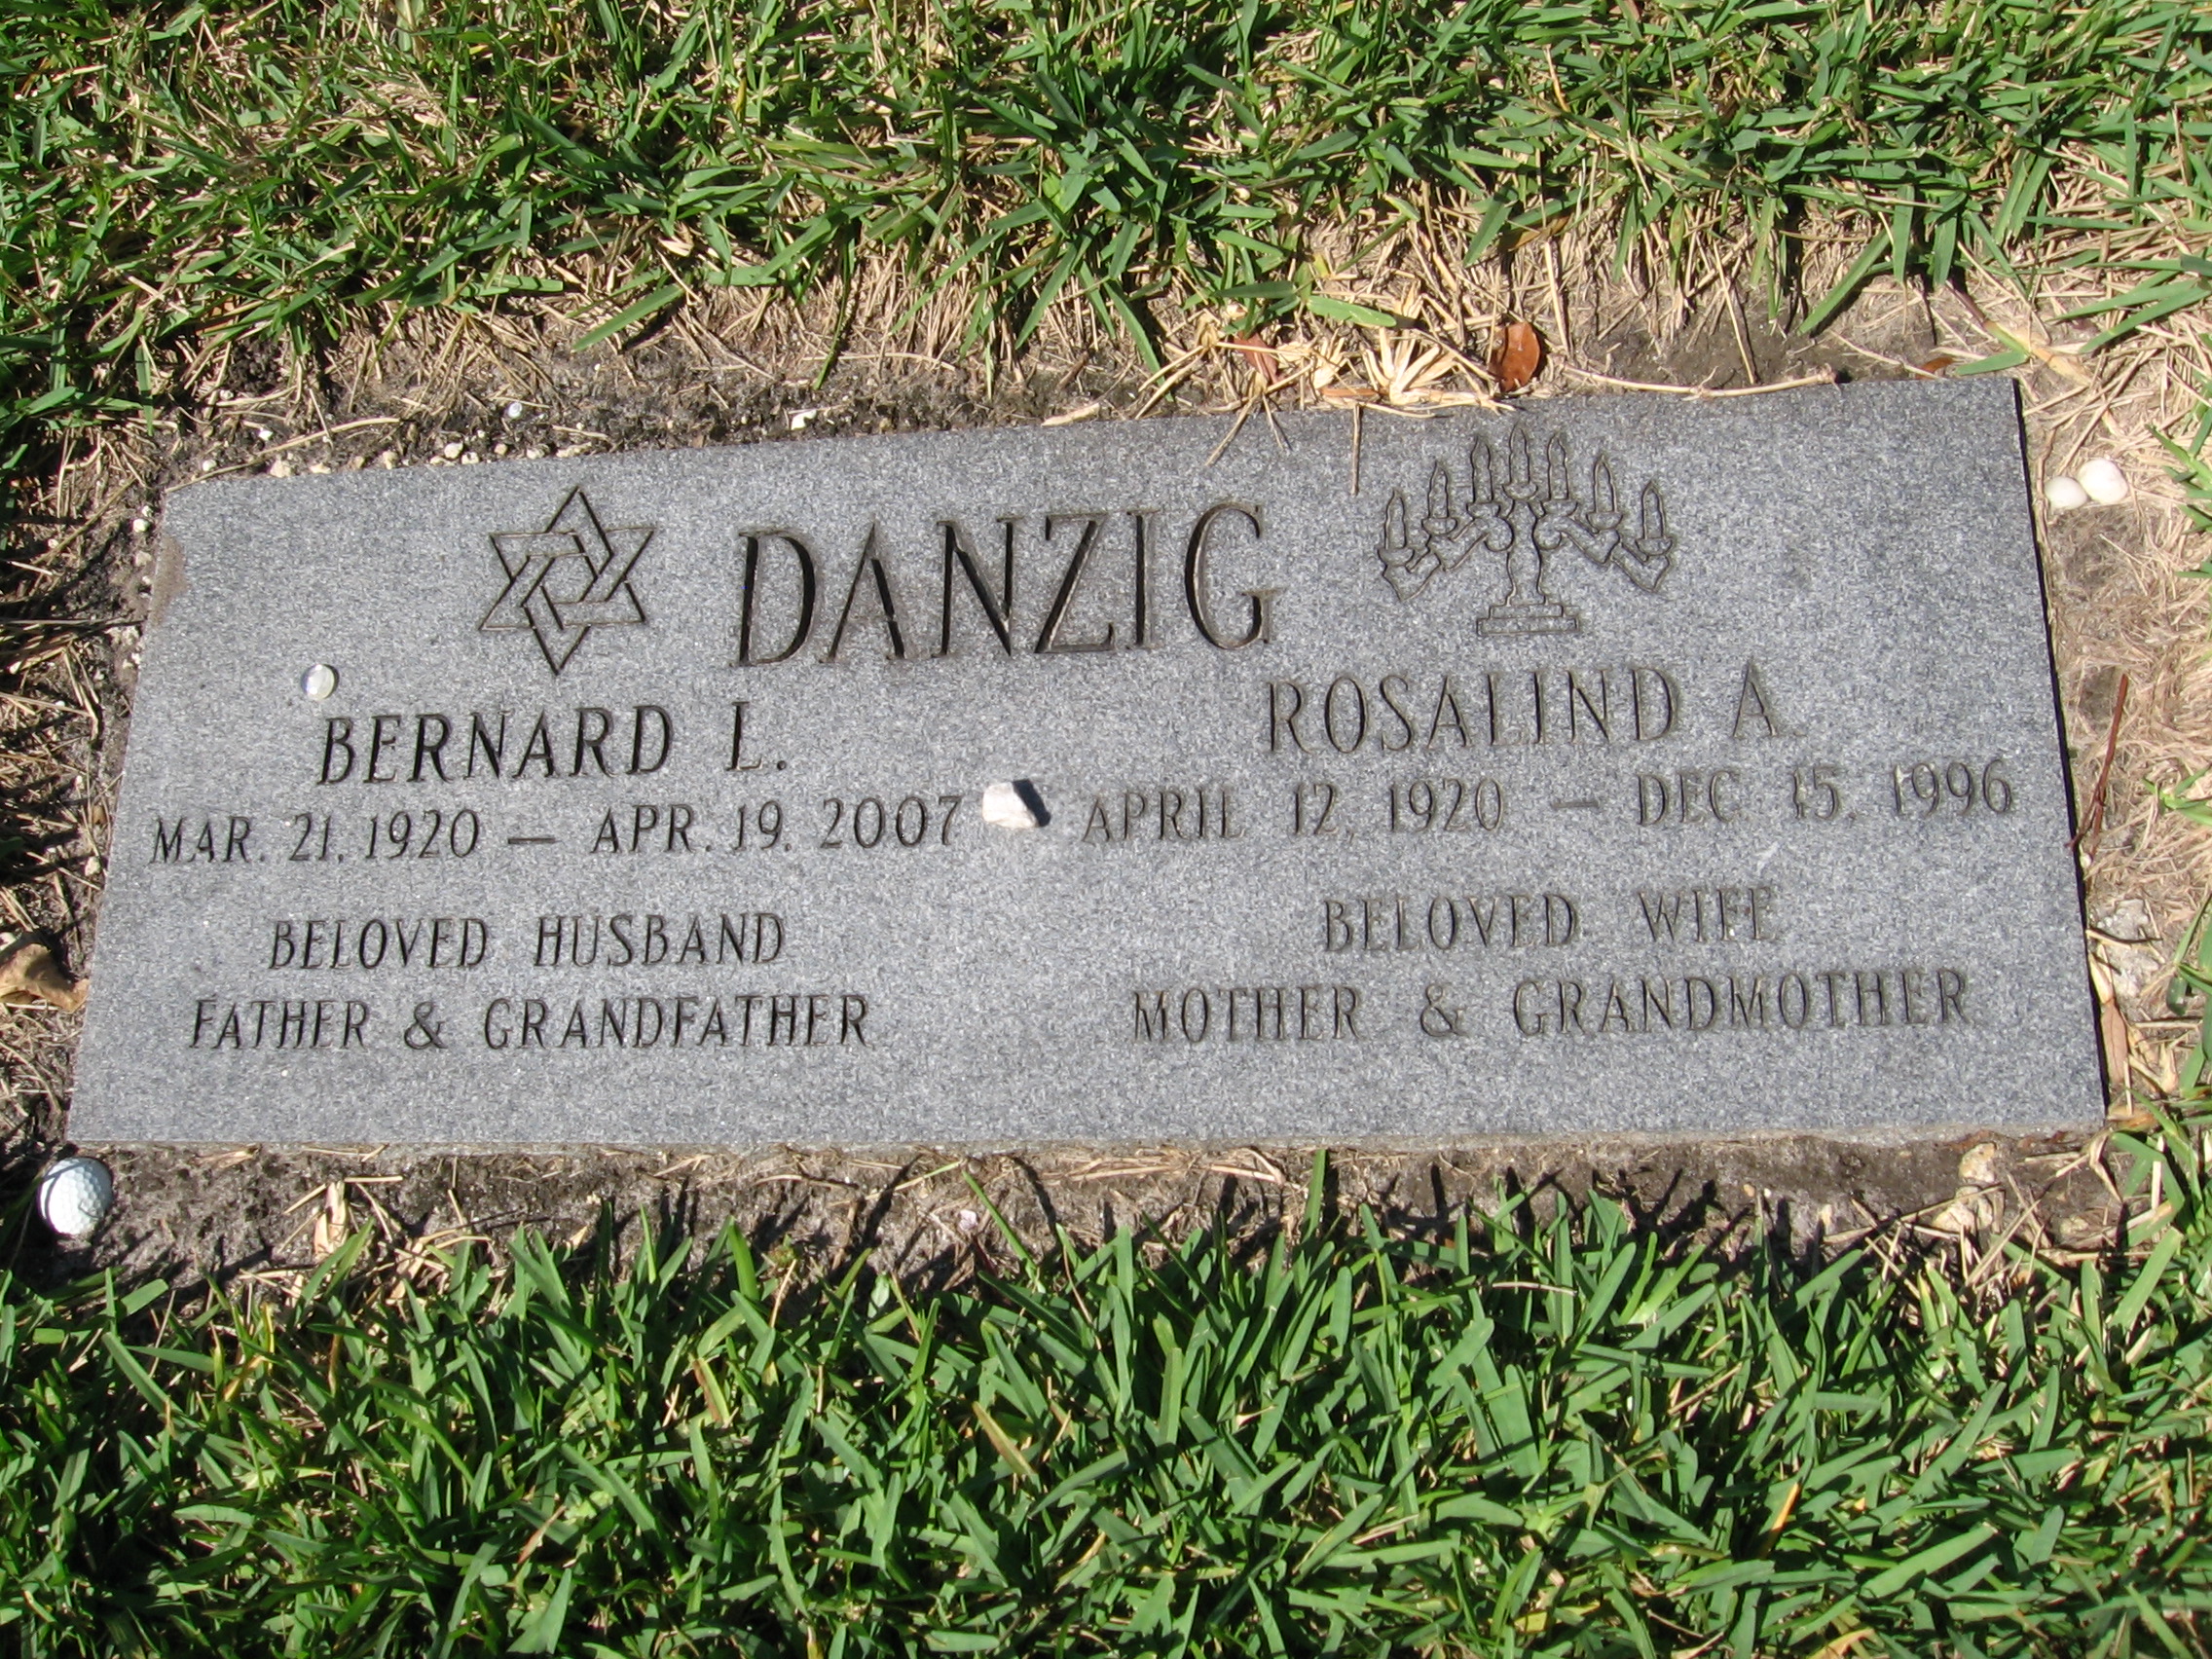 Bernard L Danzig